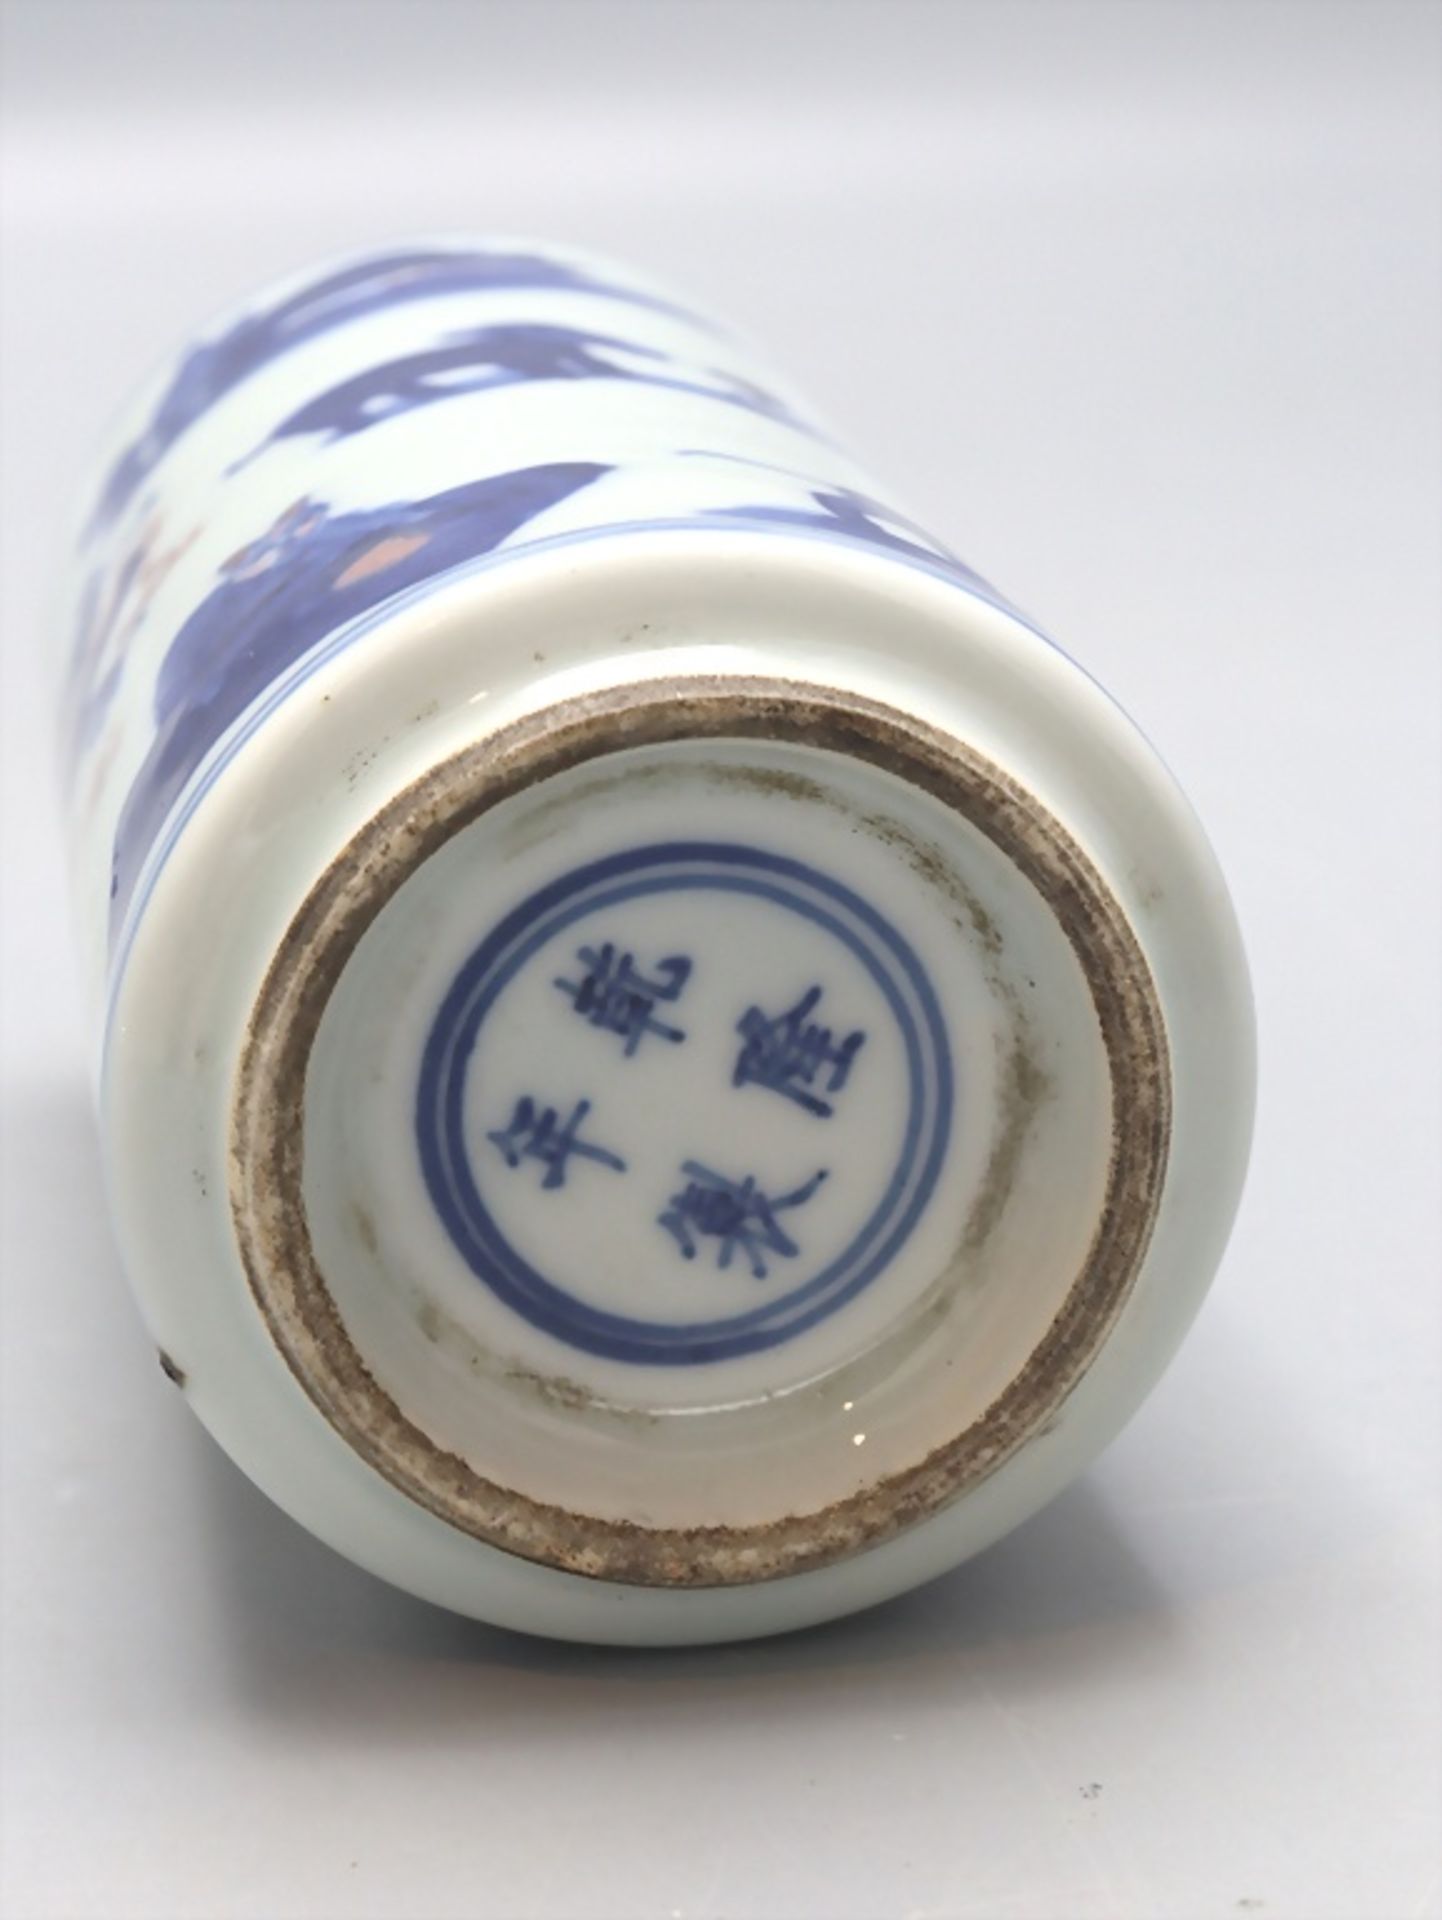 Flaschenvase 'Chinesische Tierkreiszeichen' / A flask vase 'Chinese zodiac signs', China, wohl ... - Image 5 of 5